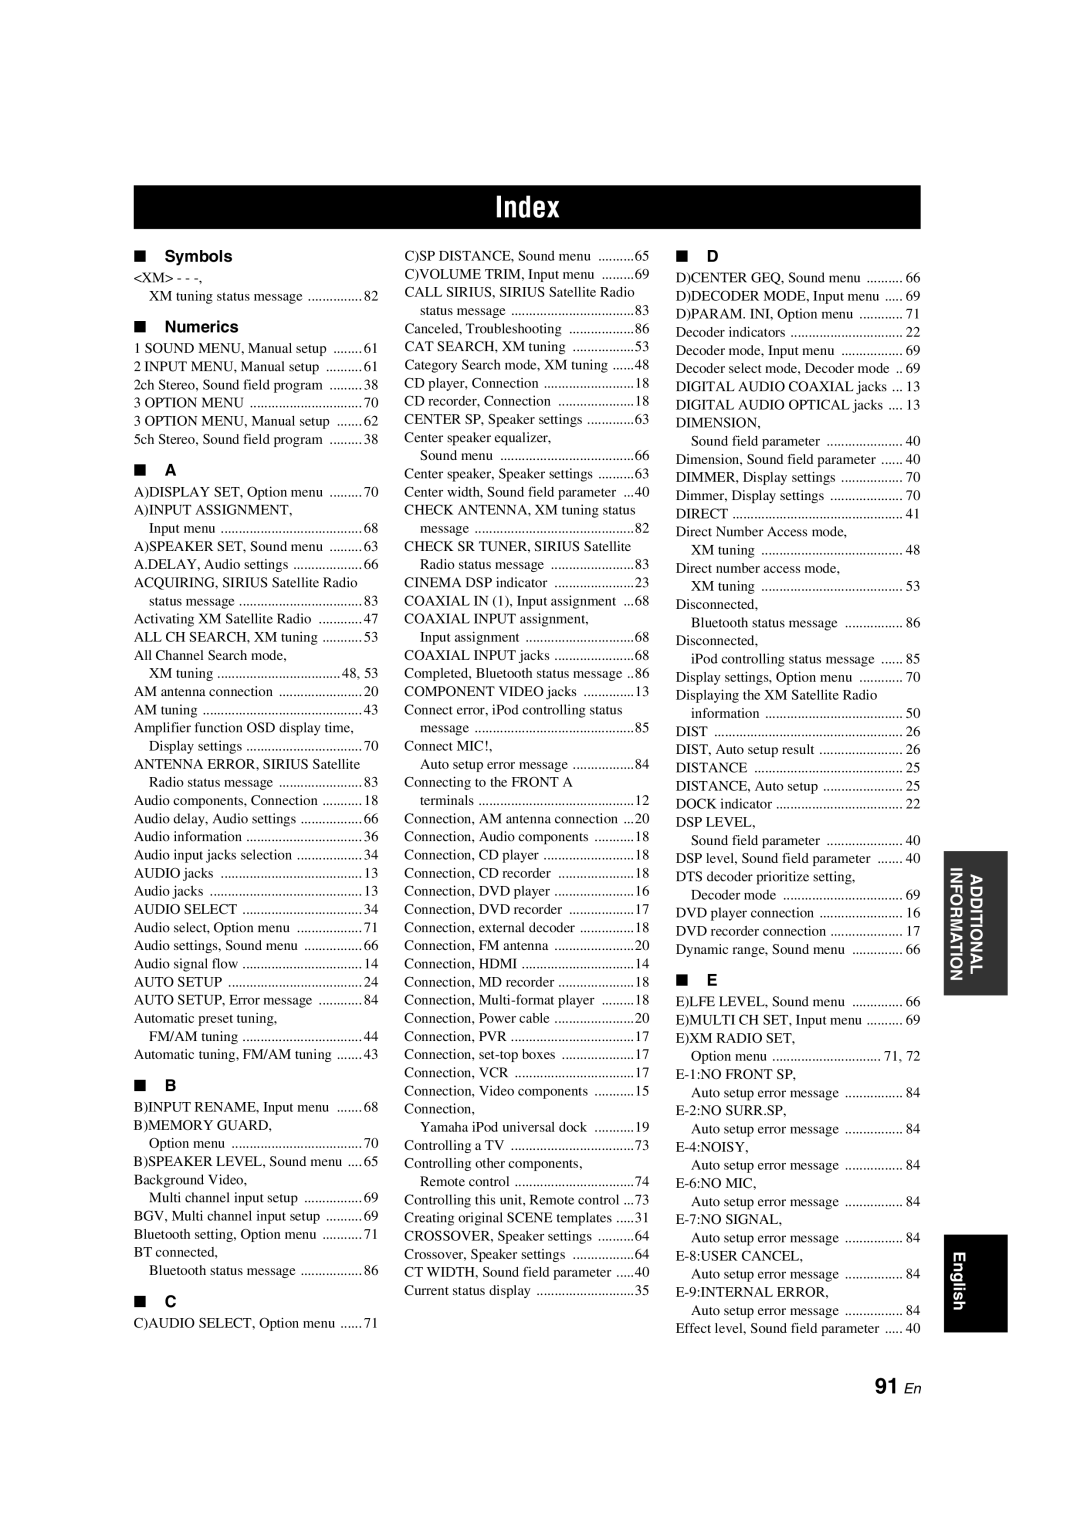 Yamaha HTR-6140 owner manual Index, 91 En 